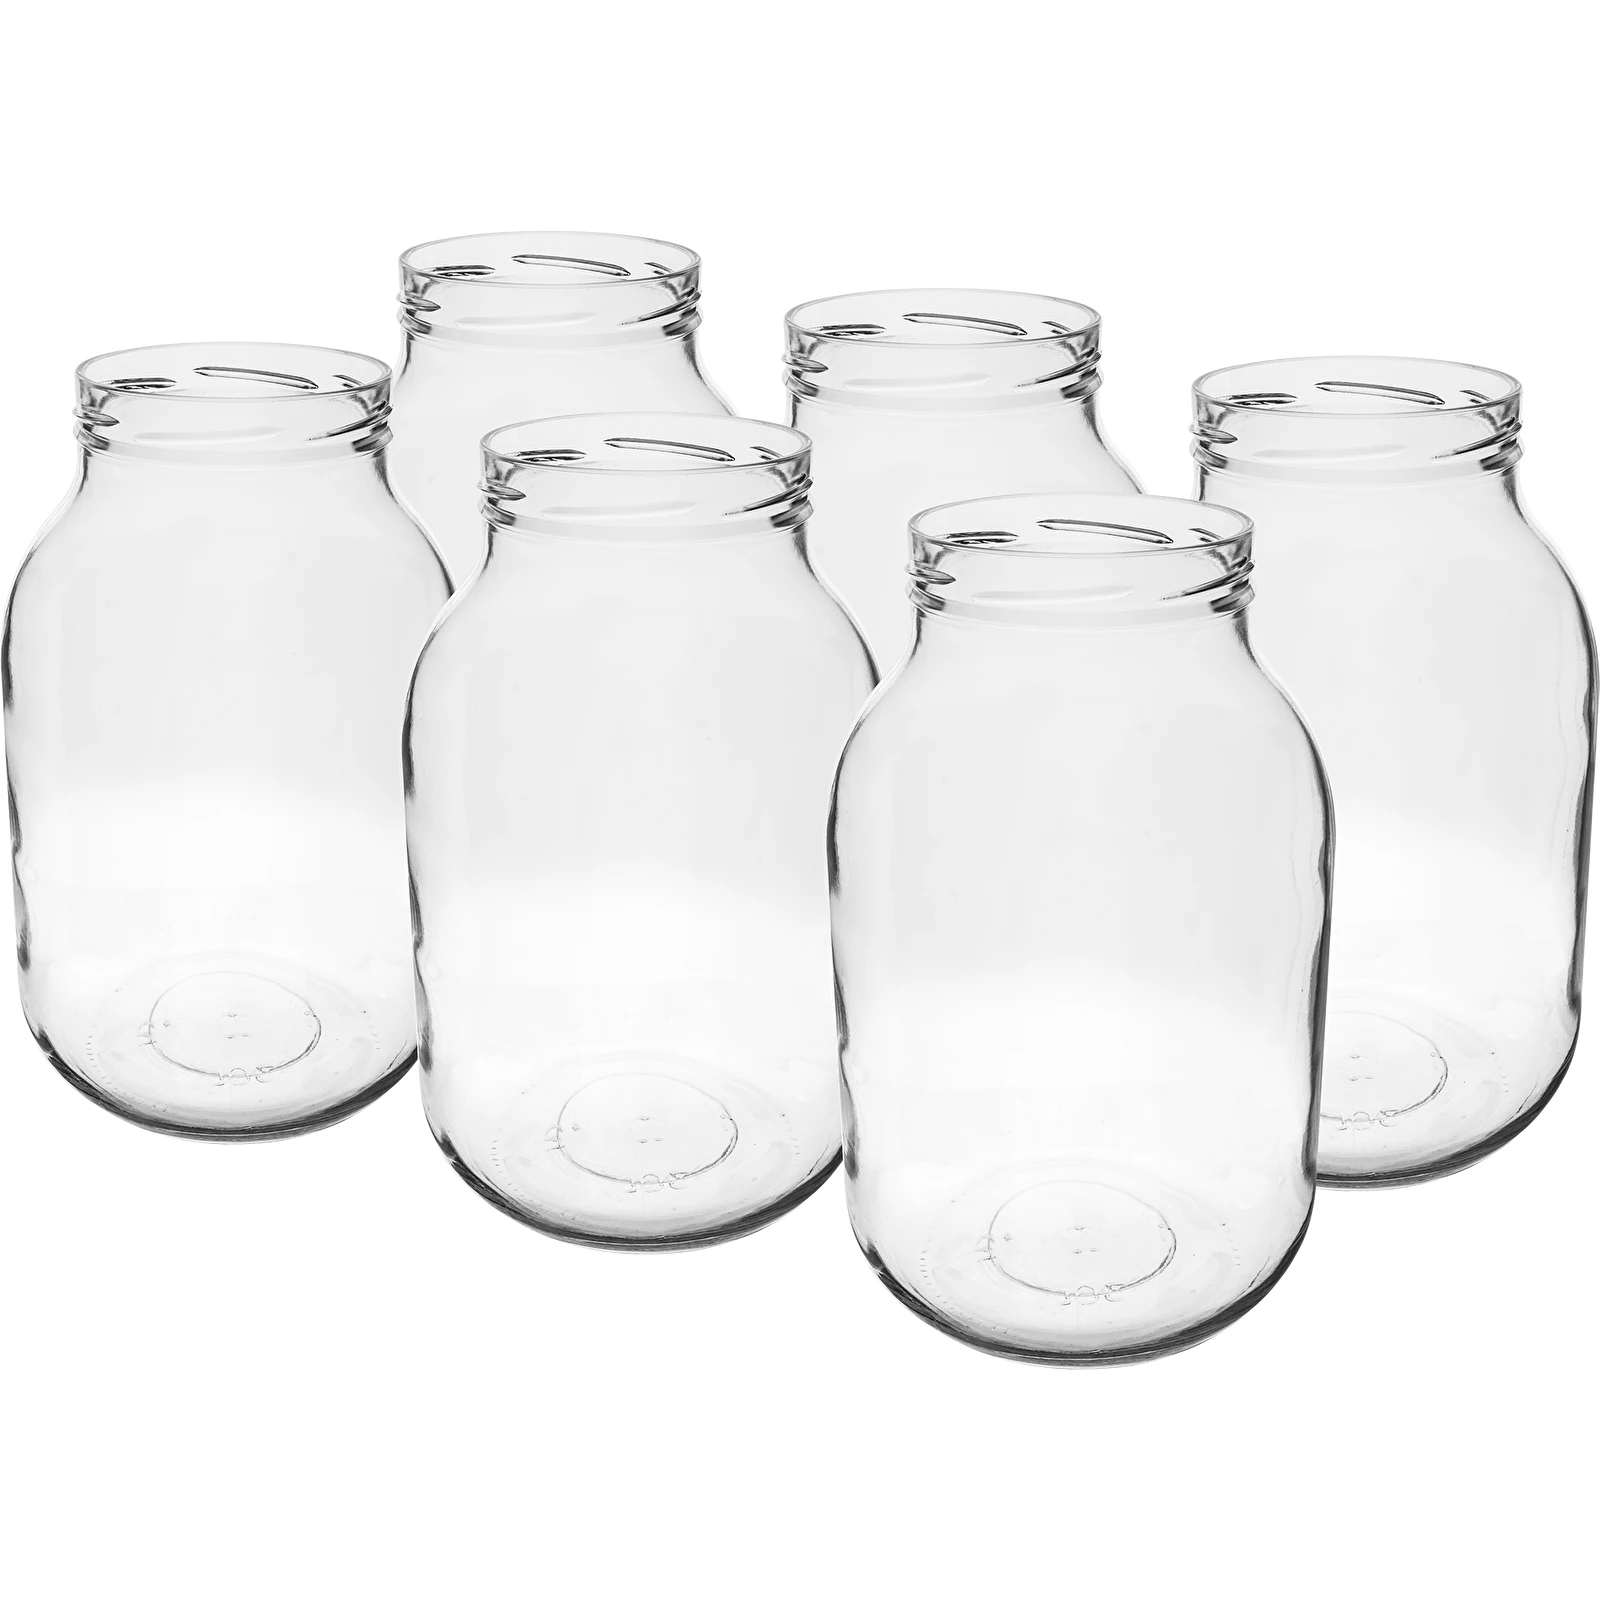 1 x RAW Customer Returns Yibaodan Glass Jars Set 330ml with 180 White –  Jobalots